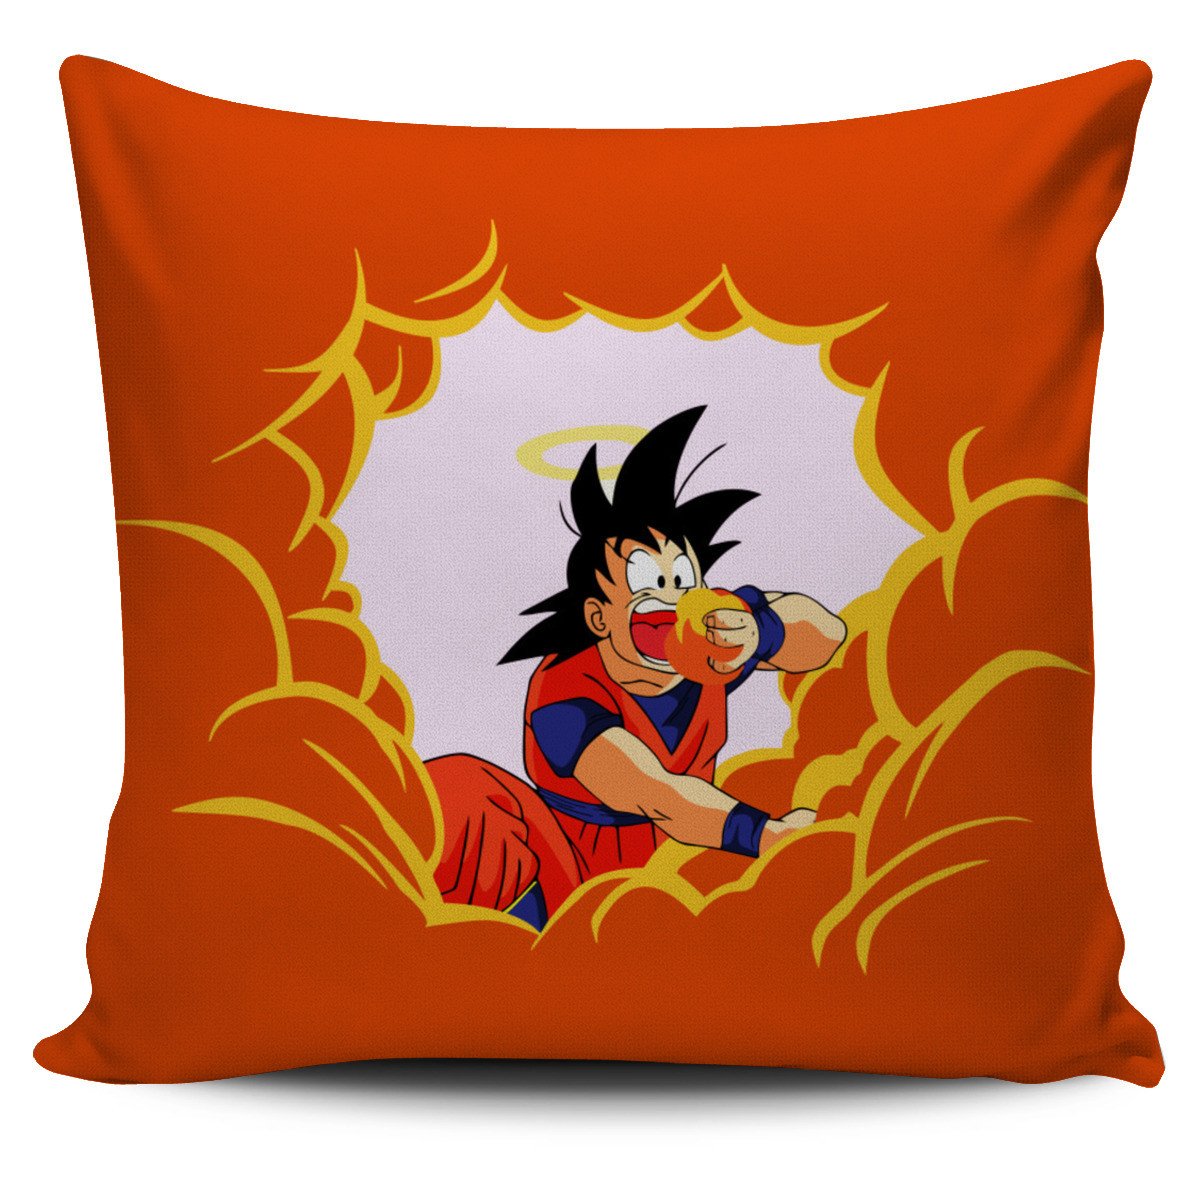 Goku Eat Clouds Pillow Cover